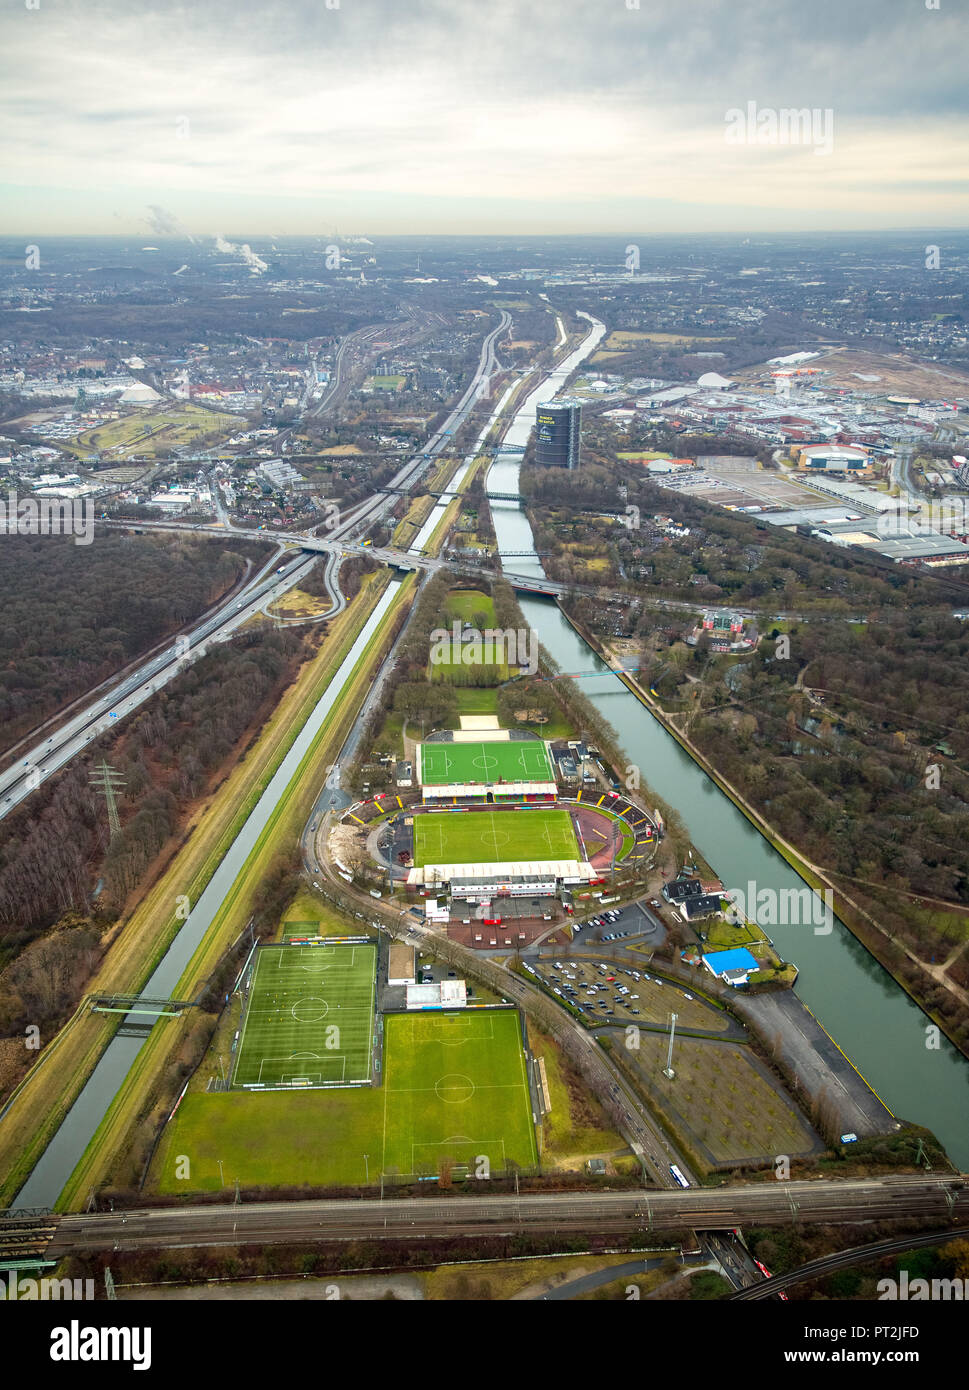 Stadion Niederrhein mit neuen Tribüne Gebäude und SSB Ort, zwischen Emscher und Rhein-Herne Kanal, Oberhausen, Ruhrgebiet, Nordrhein-Westfalen, Deutschland Stockfoto